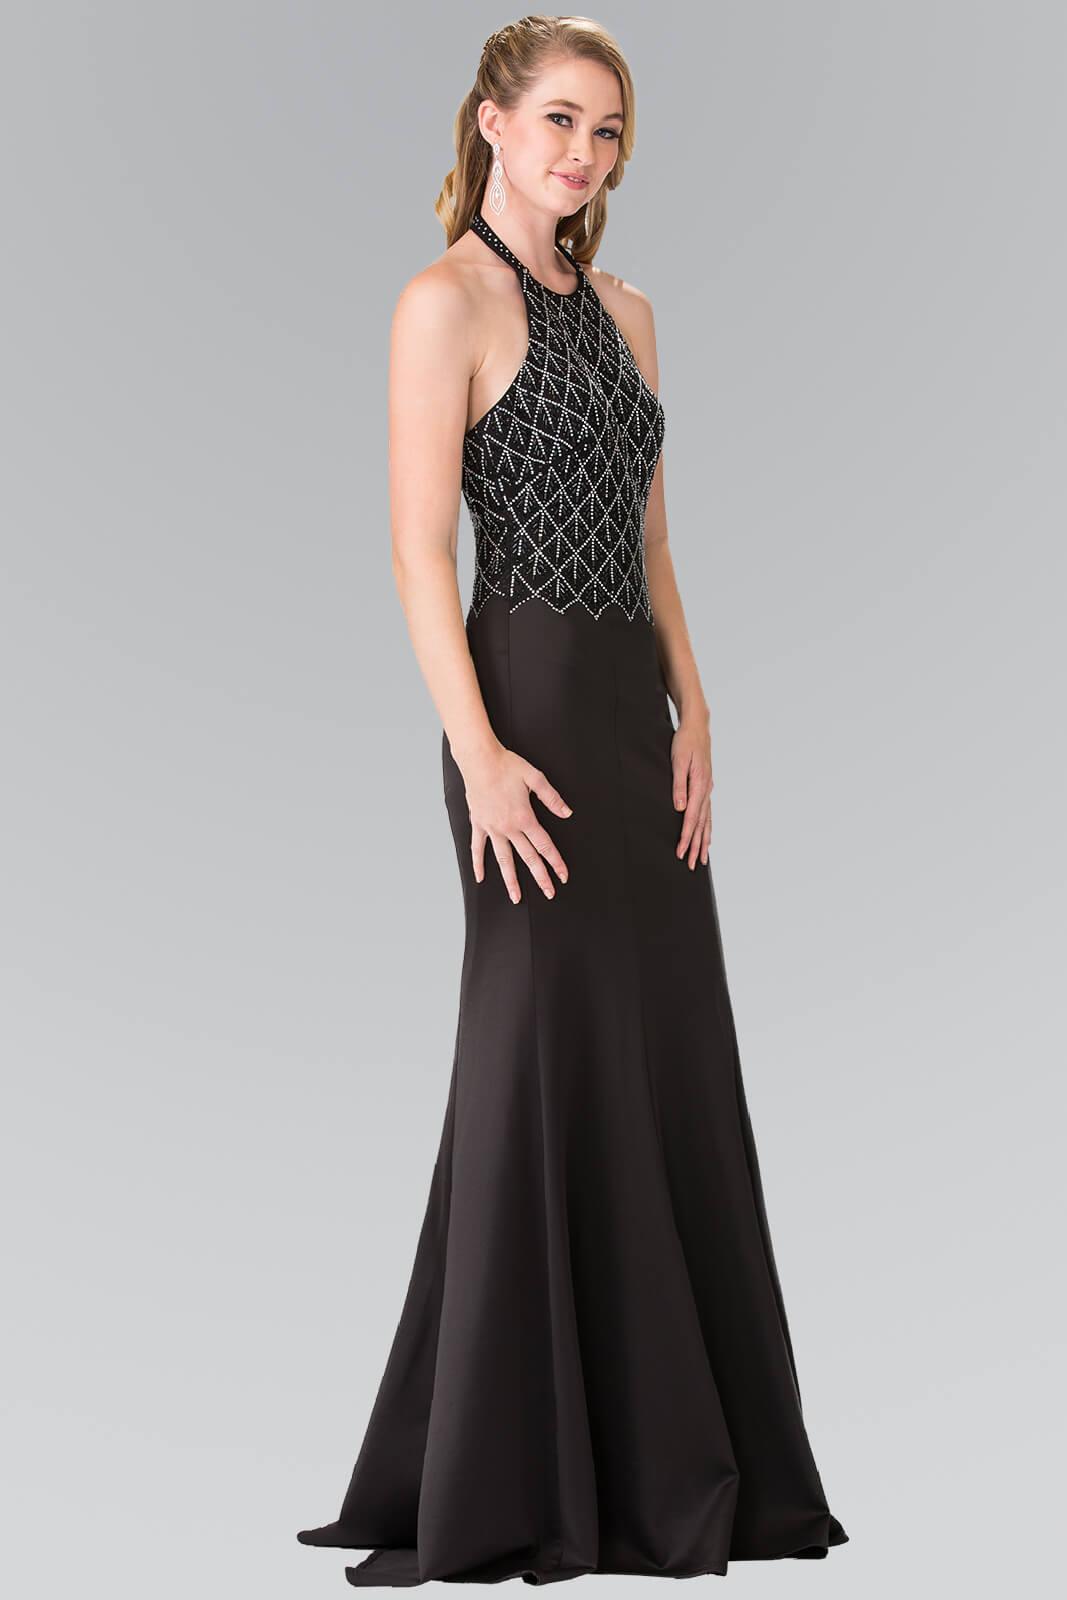 Long Formal Halter Neck Prom Dress - The Dress Outlet Elizabeth K